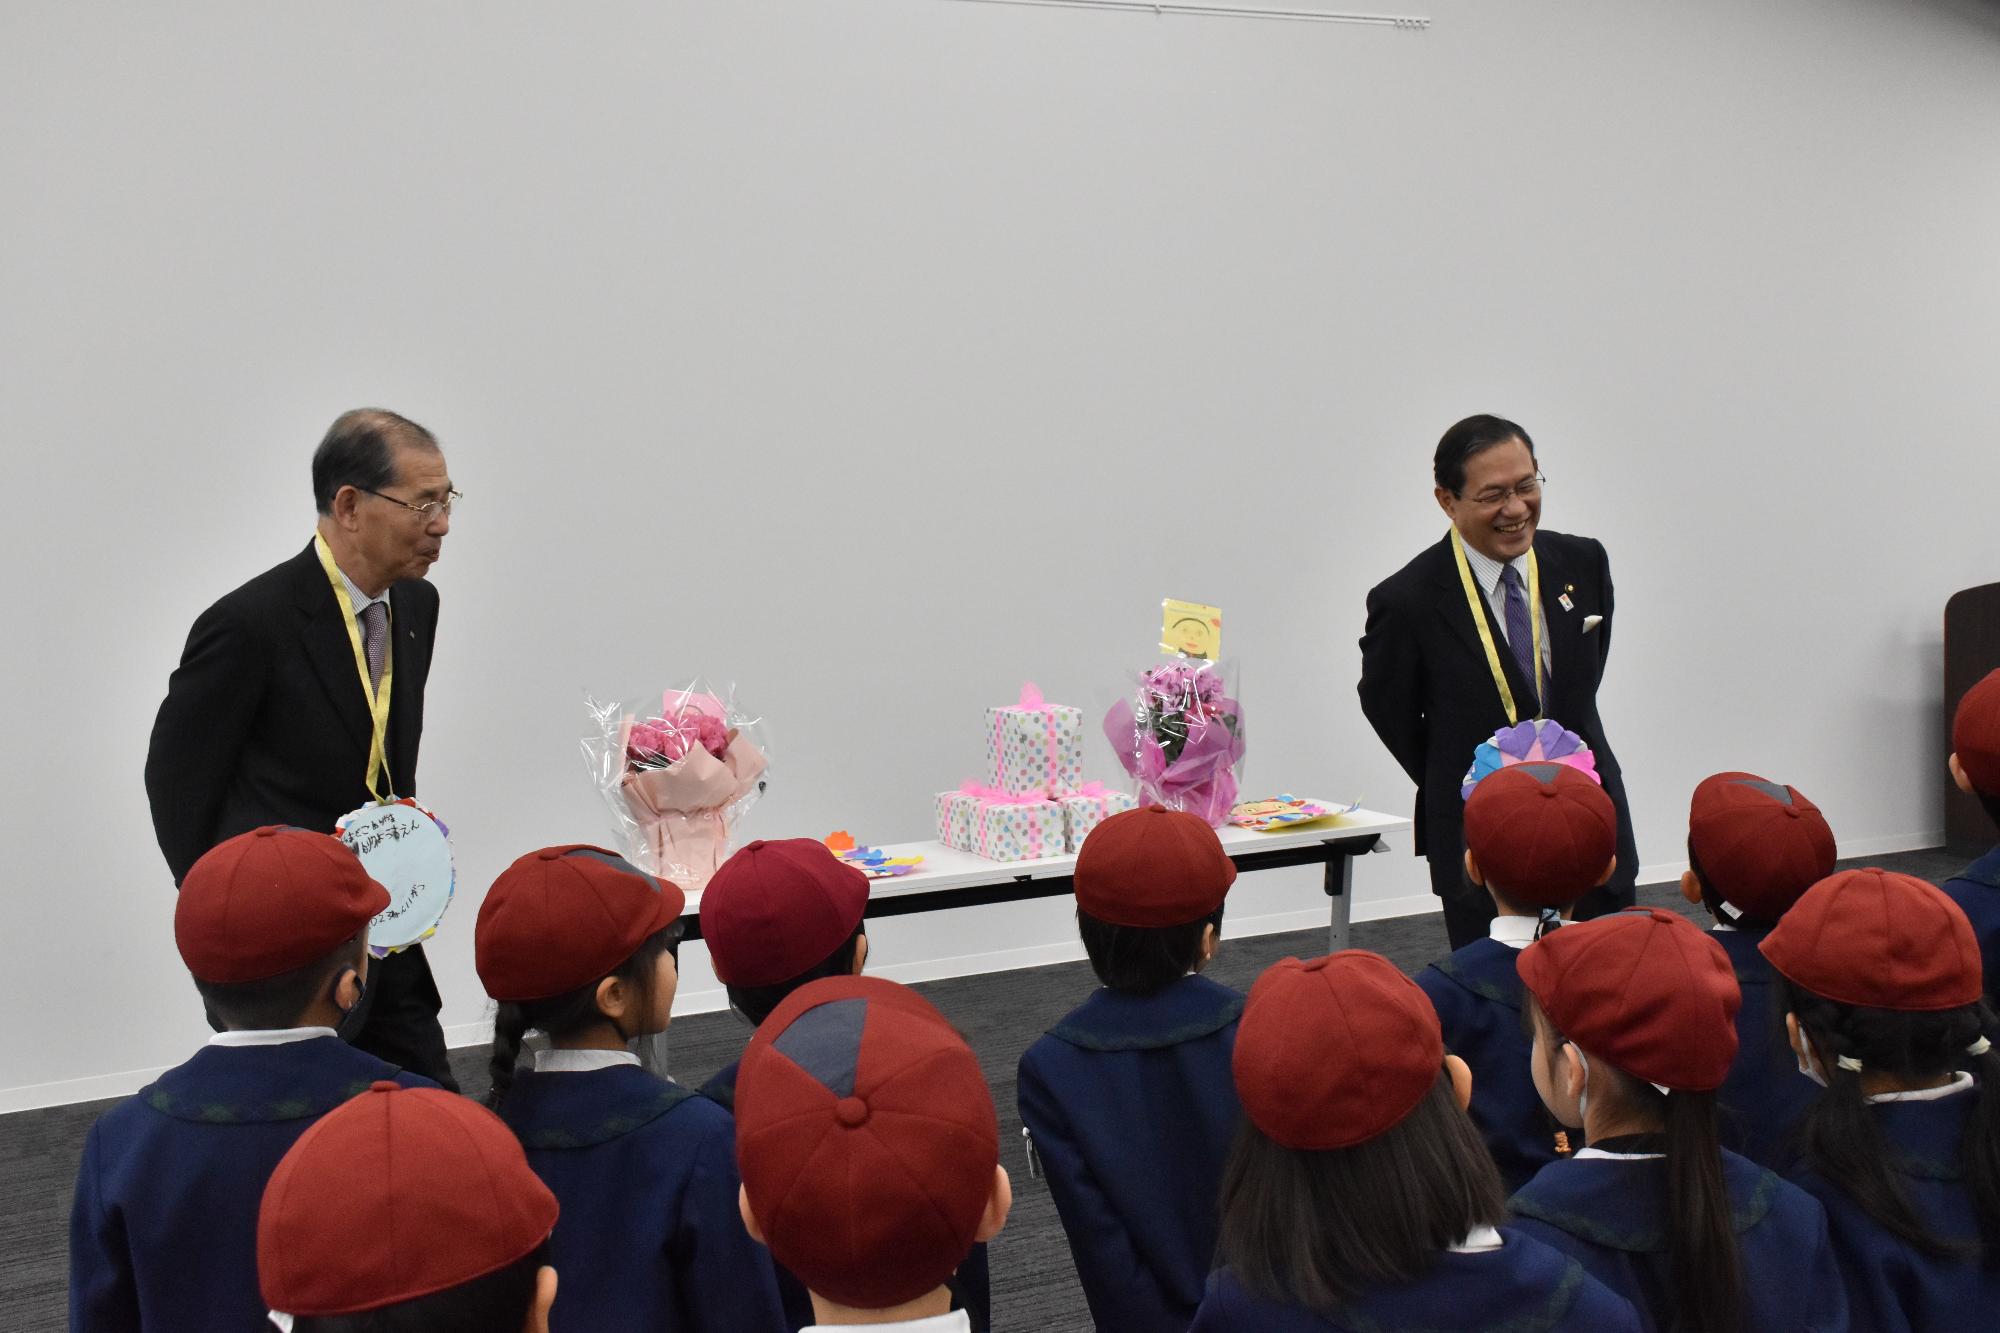 カトリック幼稚園の園児と市長、教育長が歓談している様子